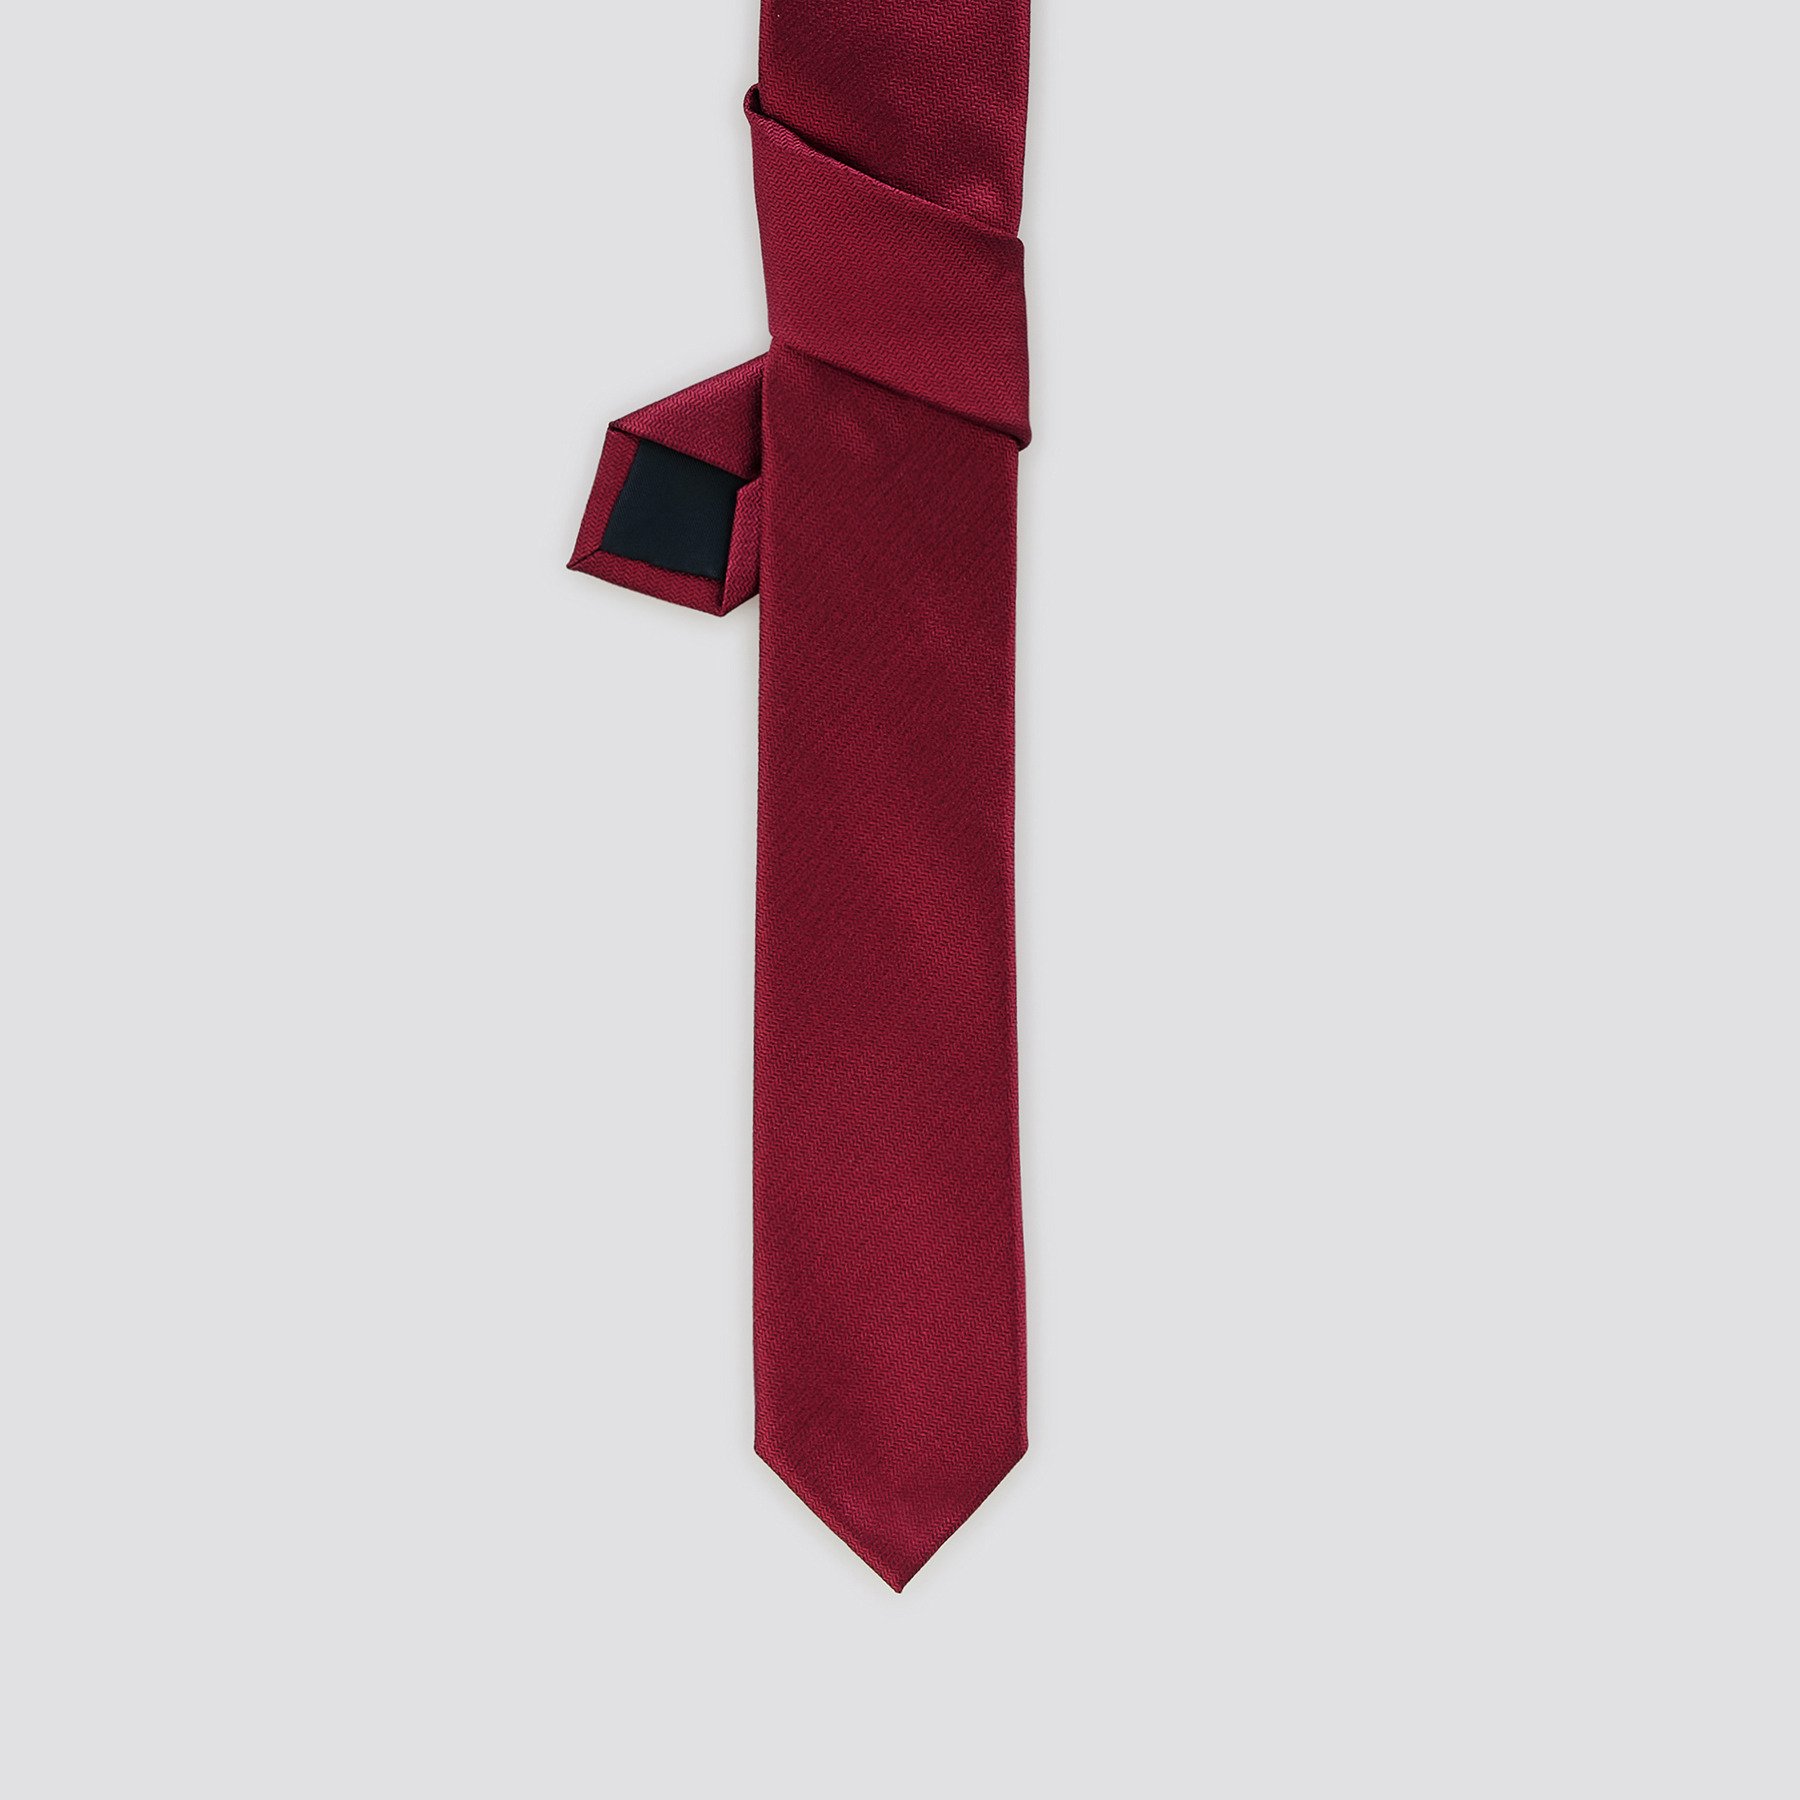 Cravate en soie Rouge T.U. 100% Polyester, 100% Soie Homme